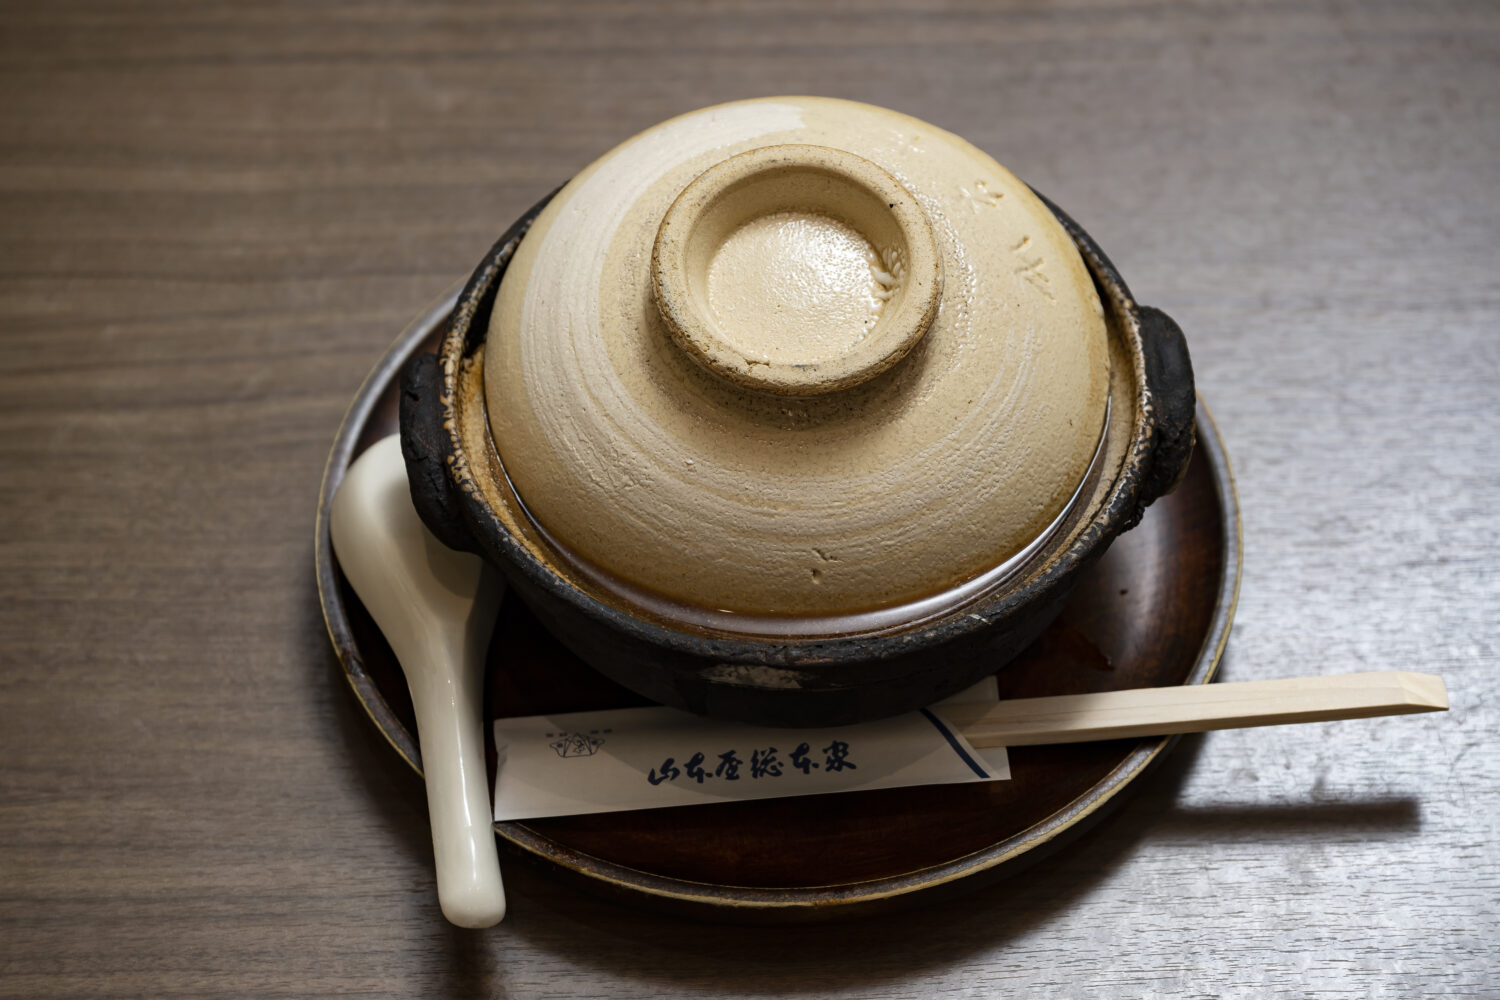 山本屋総本家の味噌煮込うどんは、この状態で供されます。立派な土鍋です。